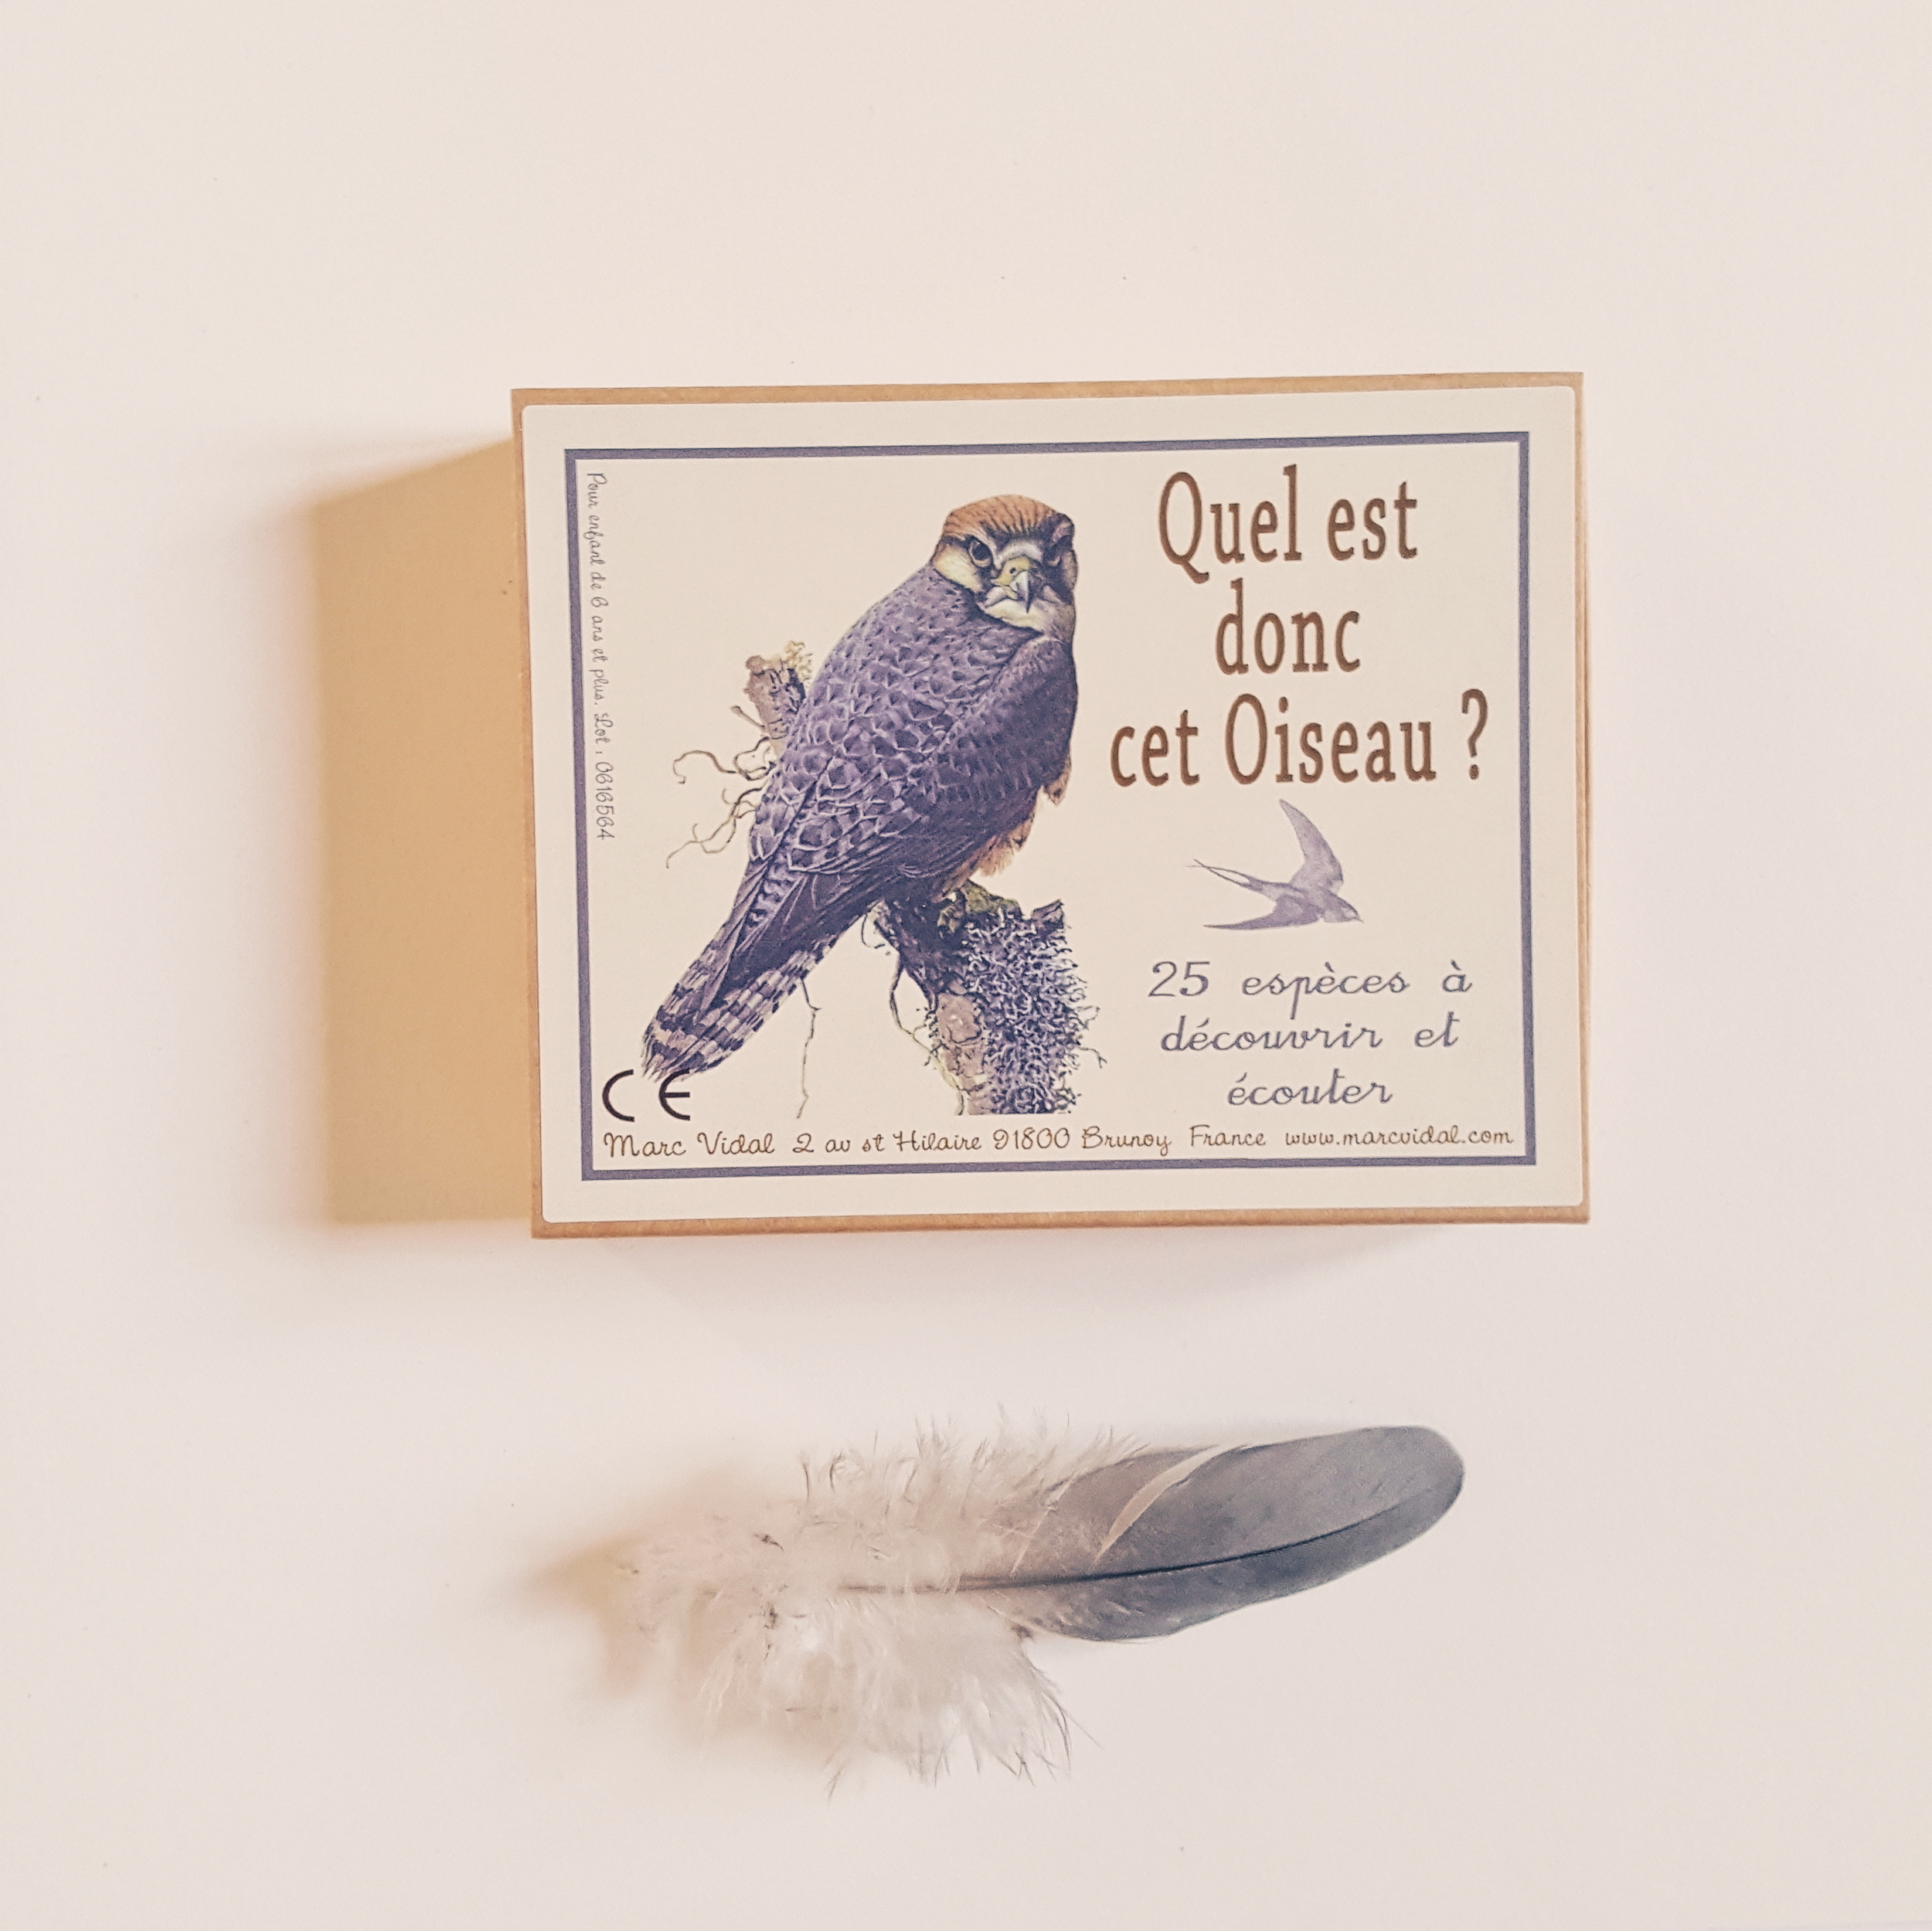 Boîte de cartes éducatives - Quel est donc cet oiseau ?